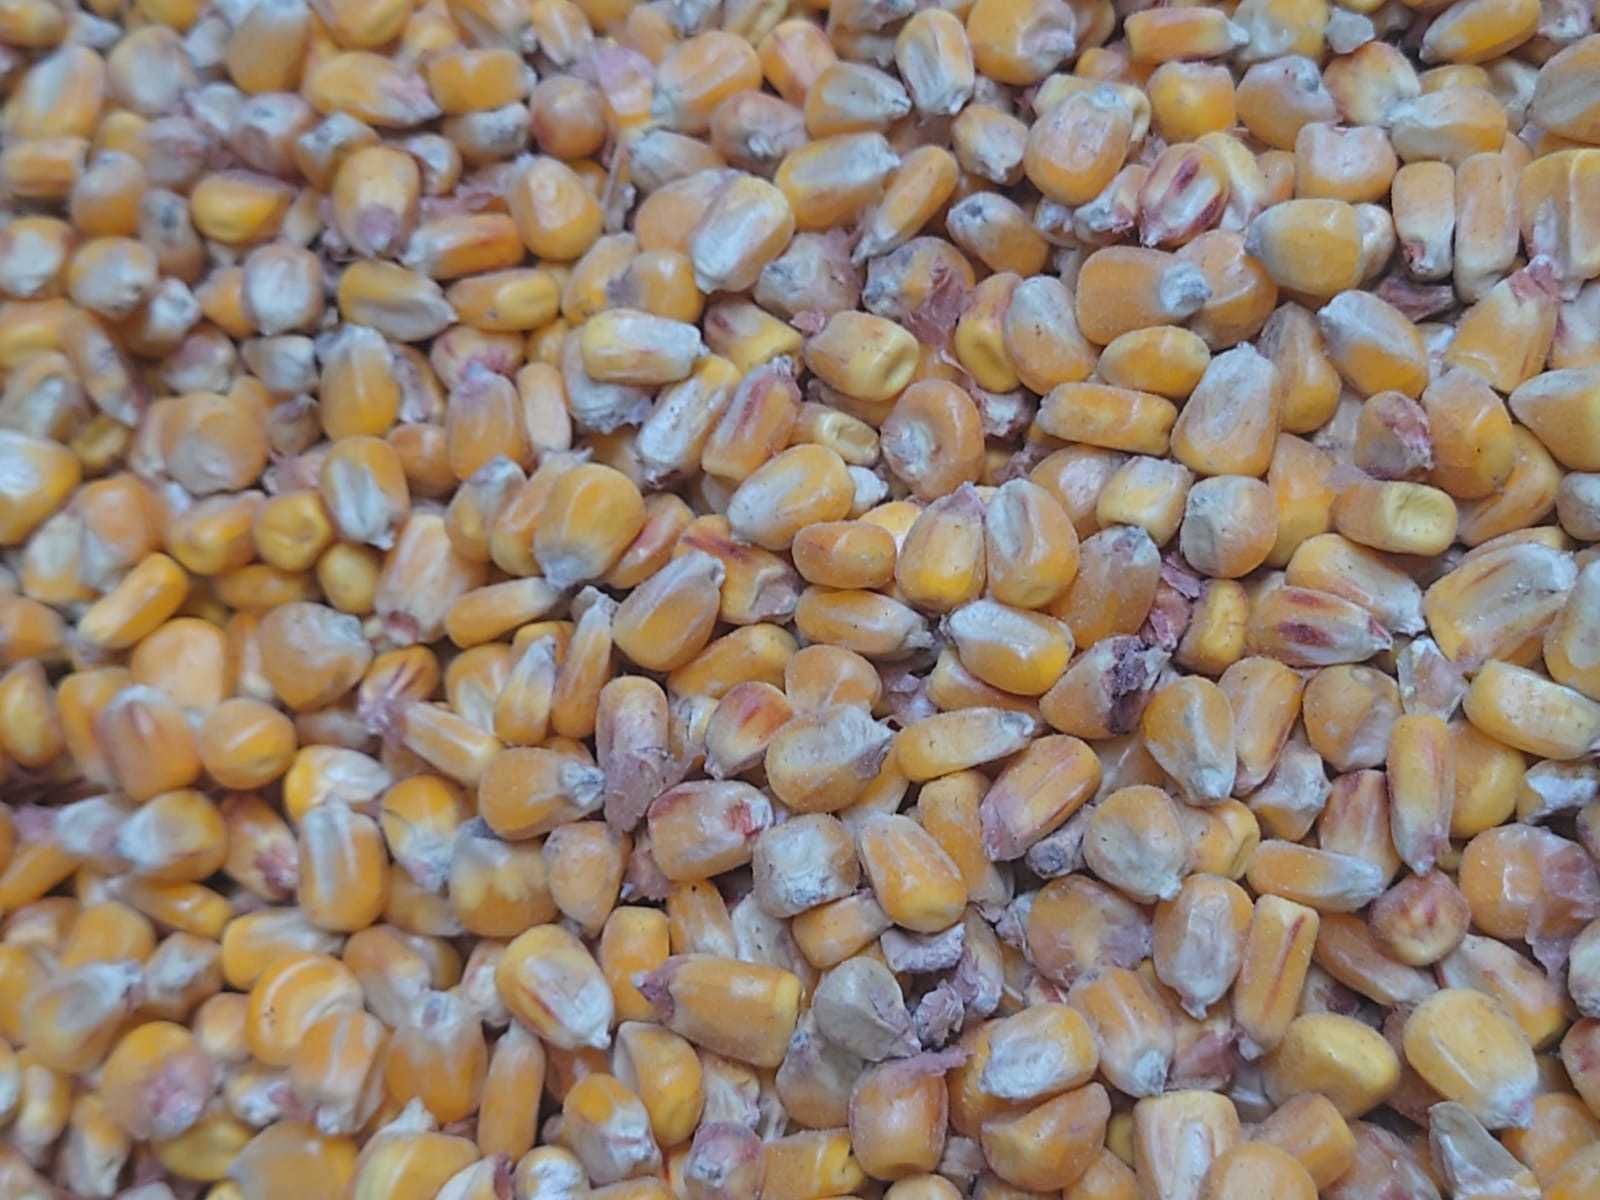 Sprzedam sucha kukurydza ziarno 1zł/kg oraz inne zboża